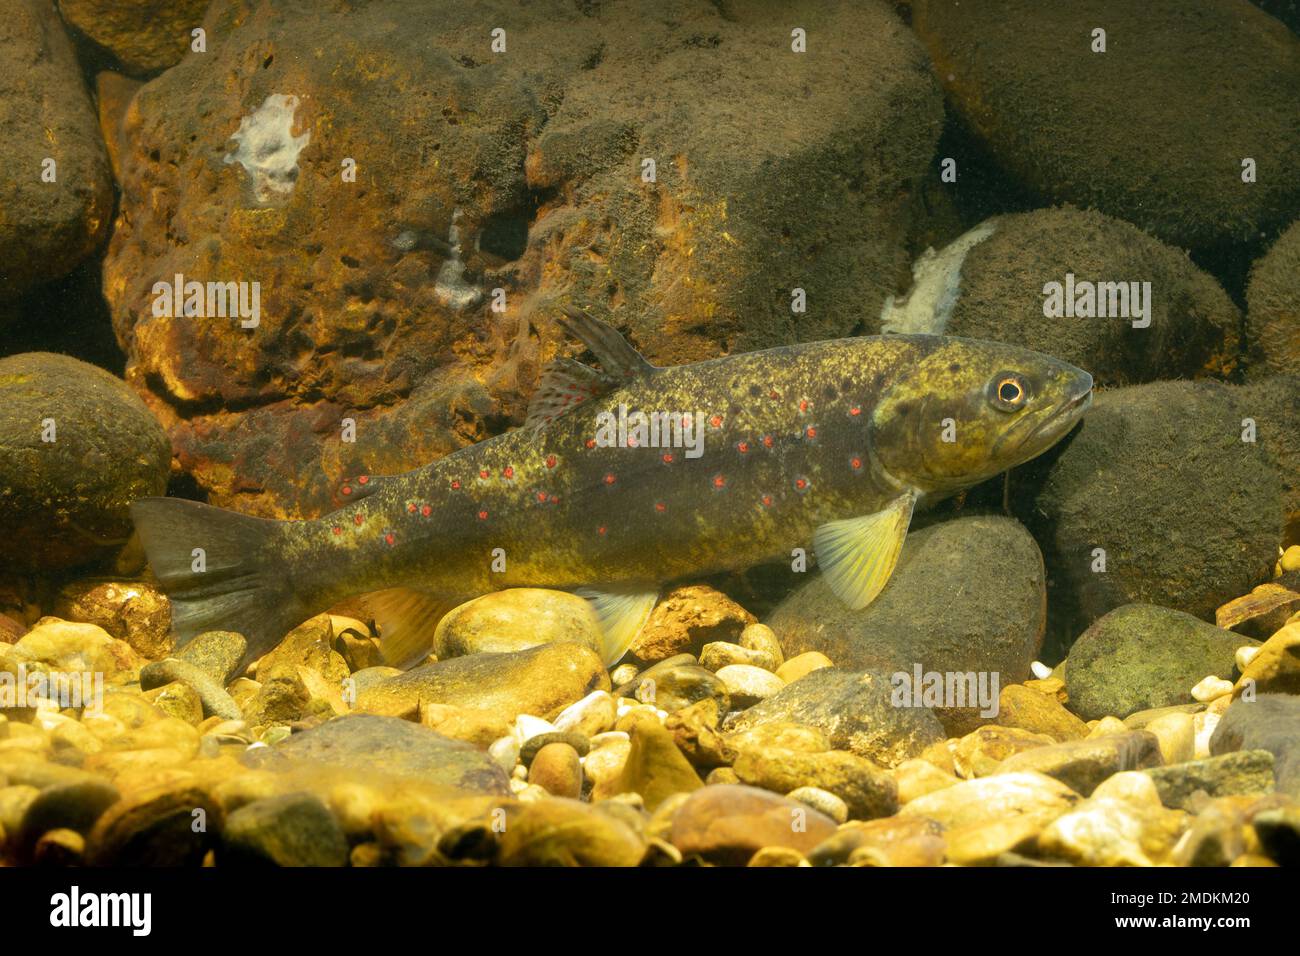 Trota bruna, trota di fiume, trota di ruscello (Salmo trutta fario), in colore camo su una terra d'acqua, Germania Foto Stock